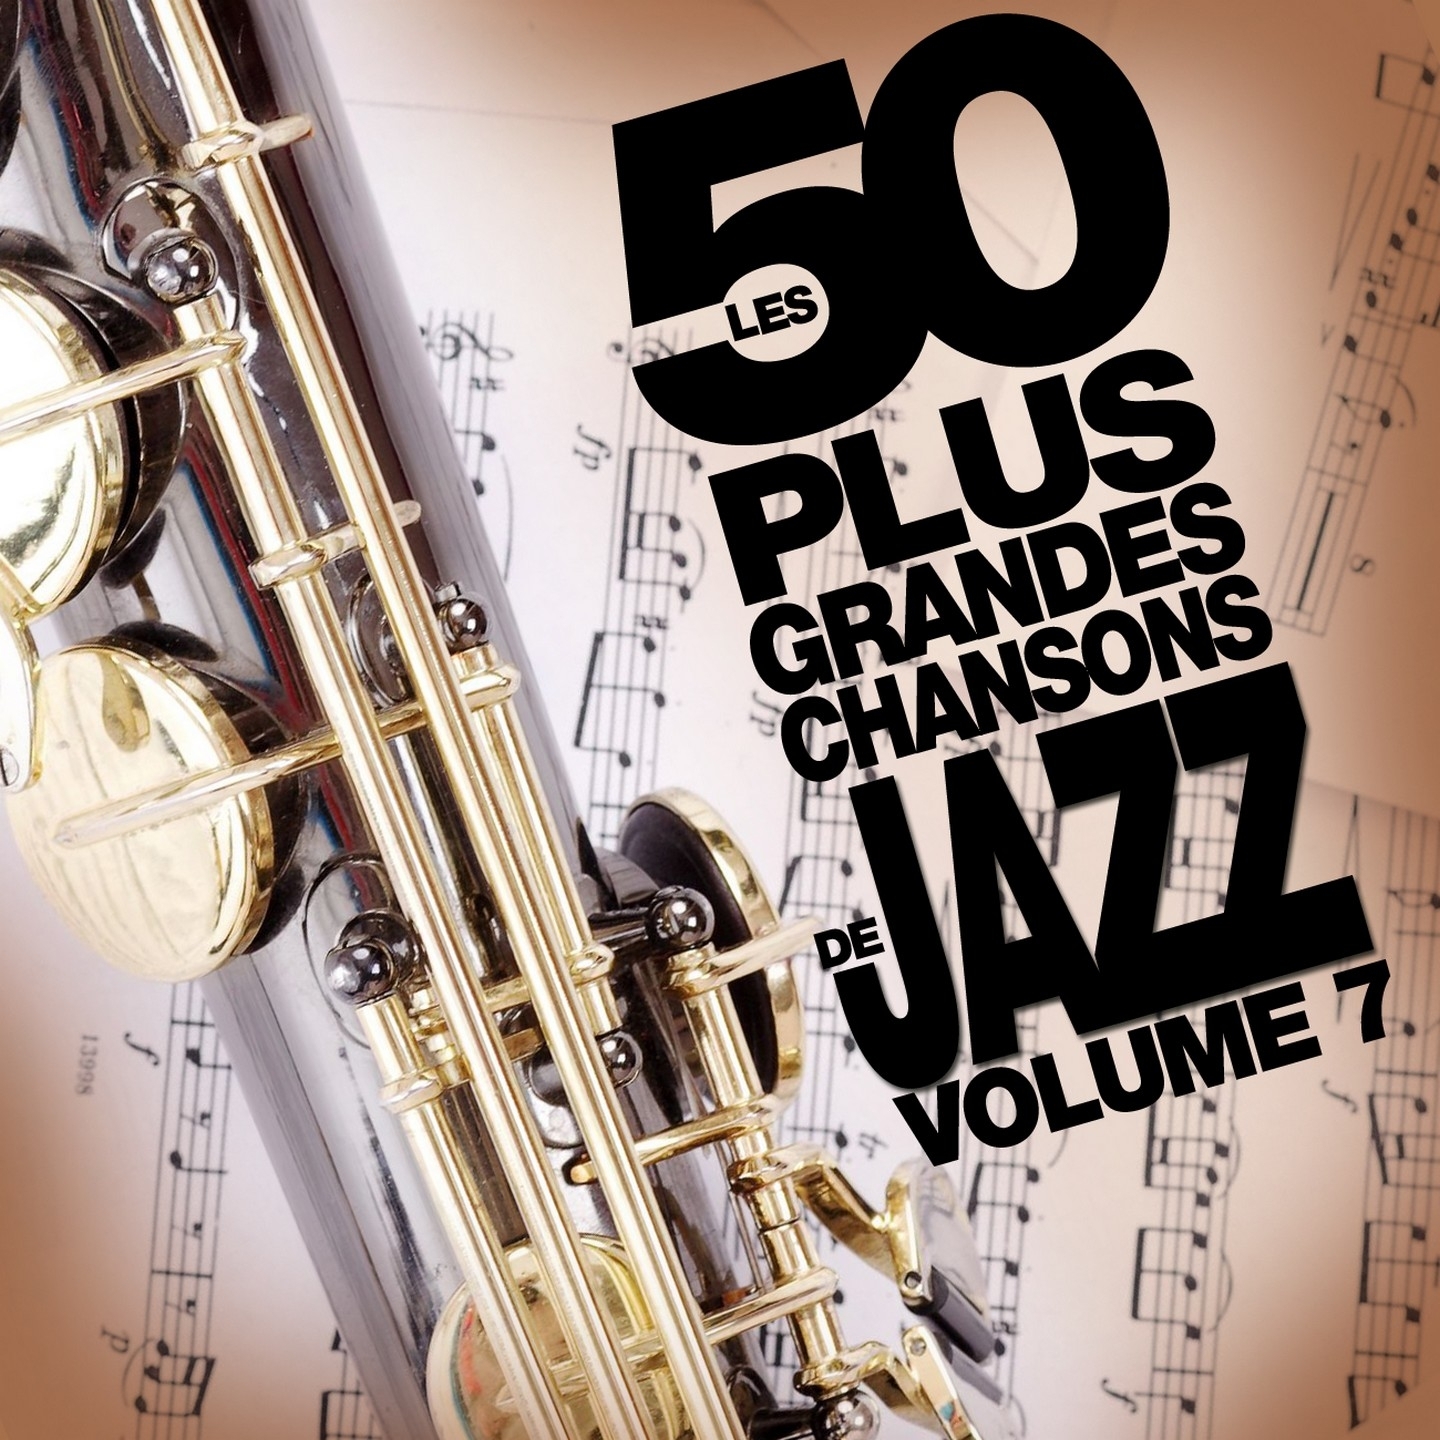 Les 50 plus grandes chansons de jazz (Vol. 7)